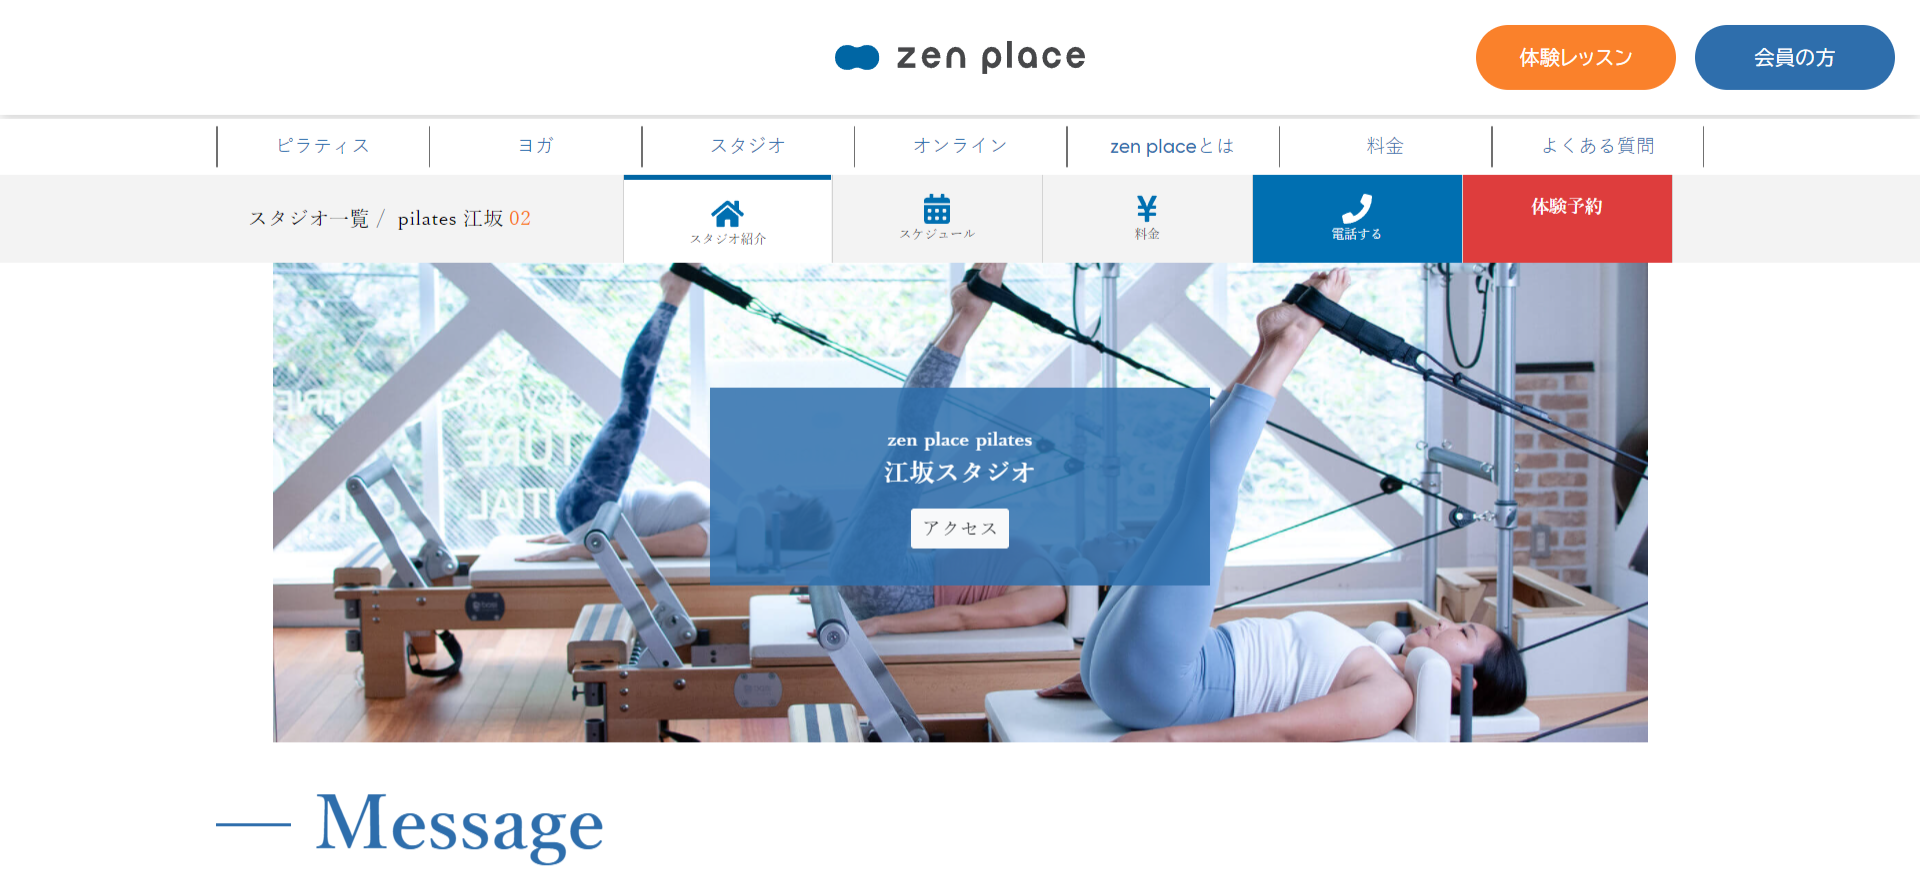 zen place pilates 江坂